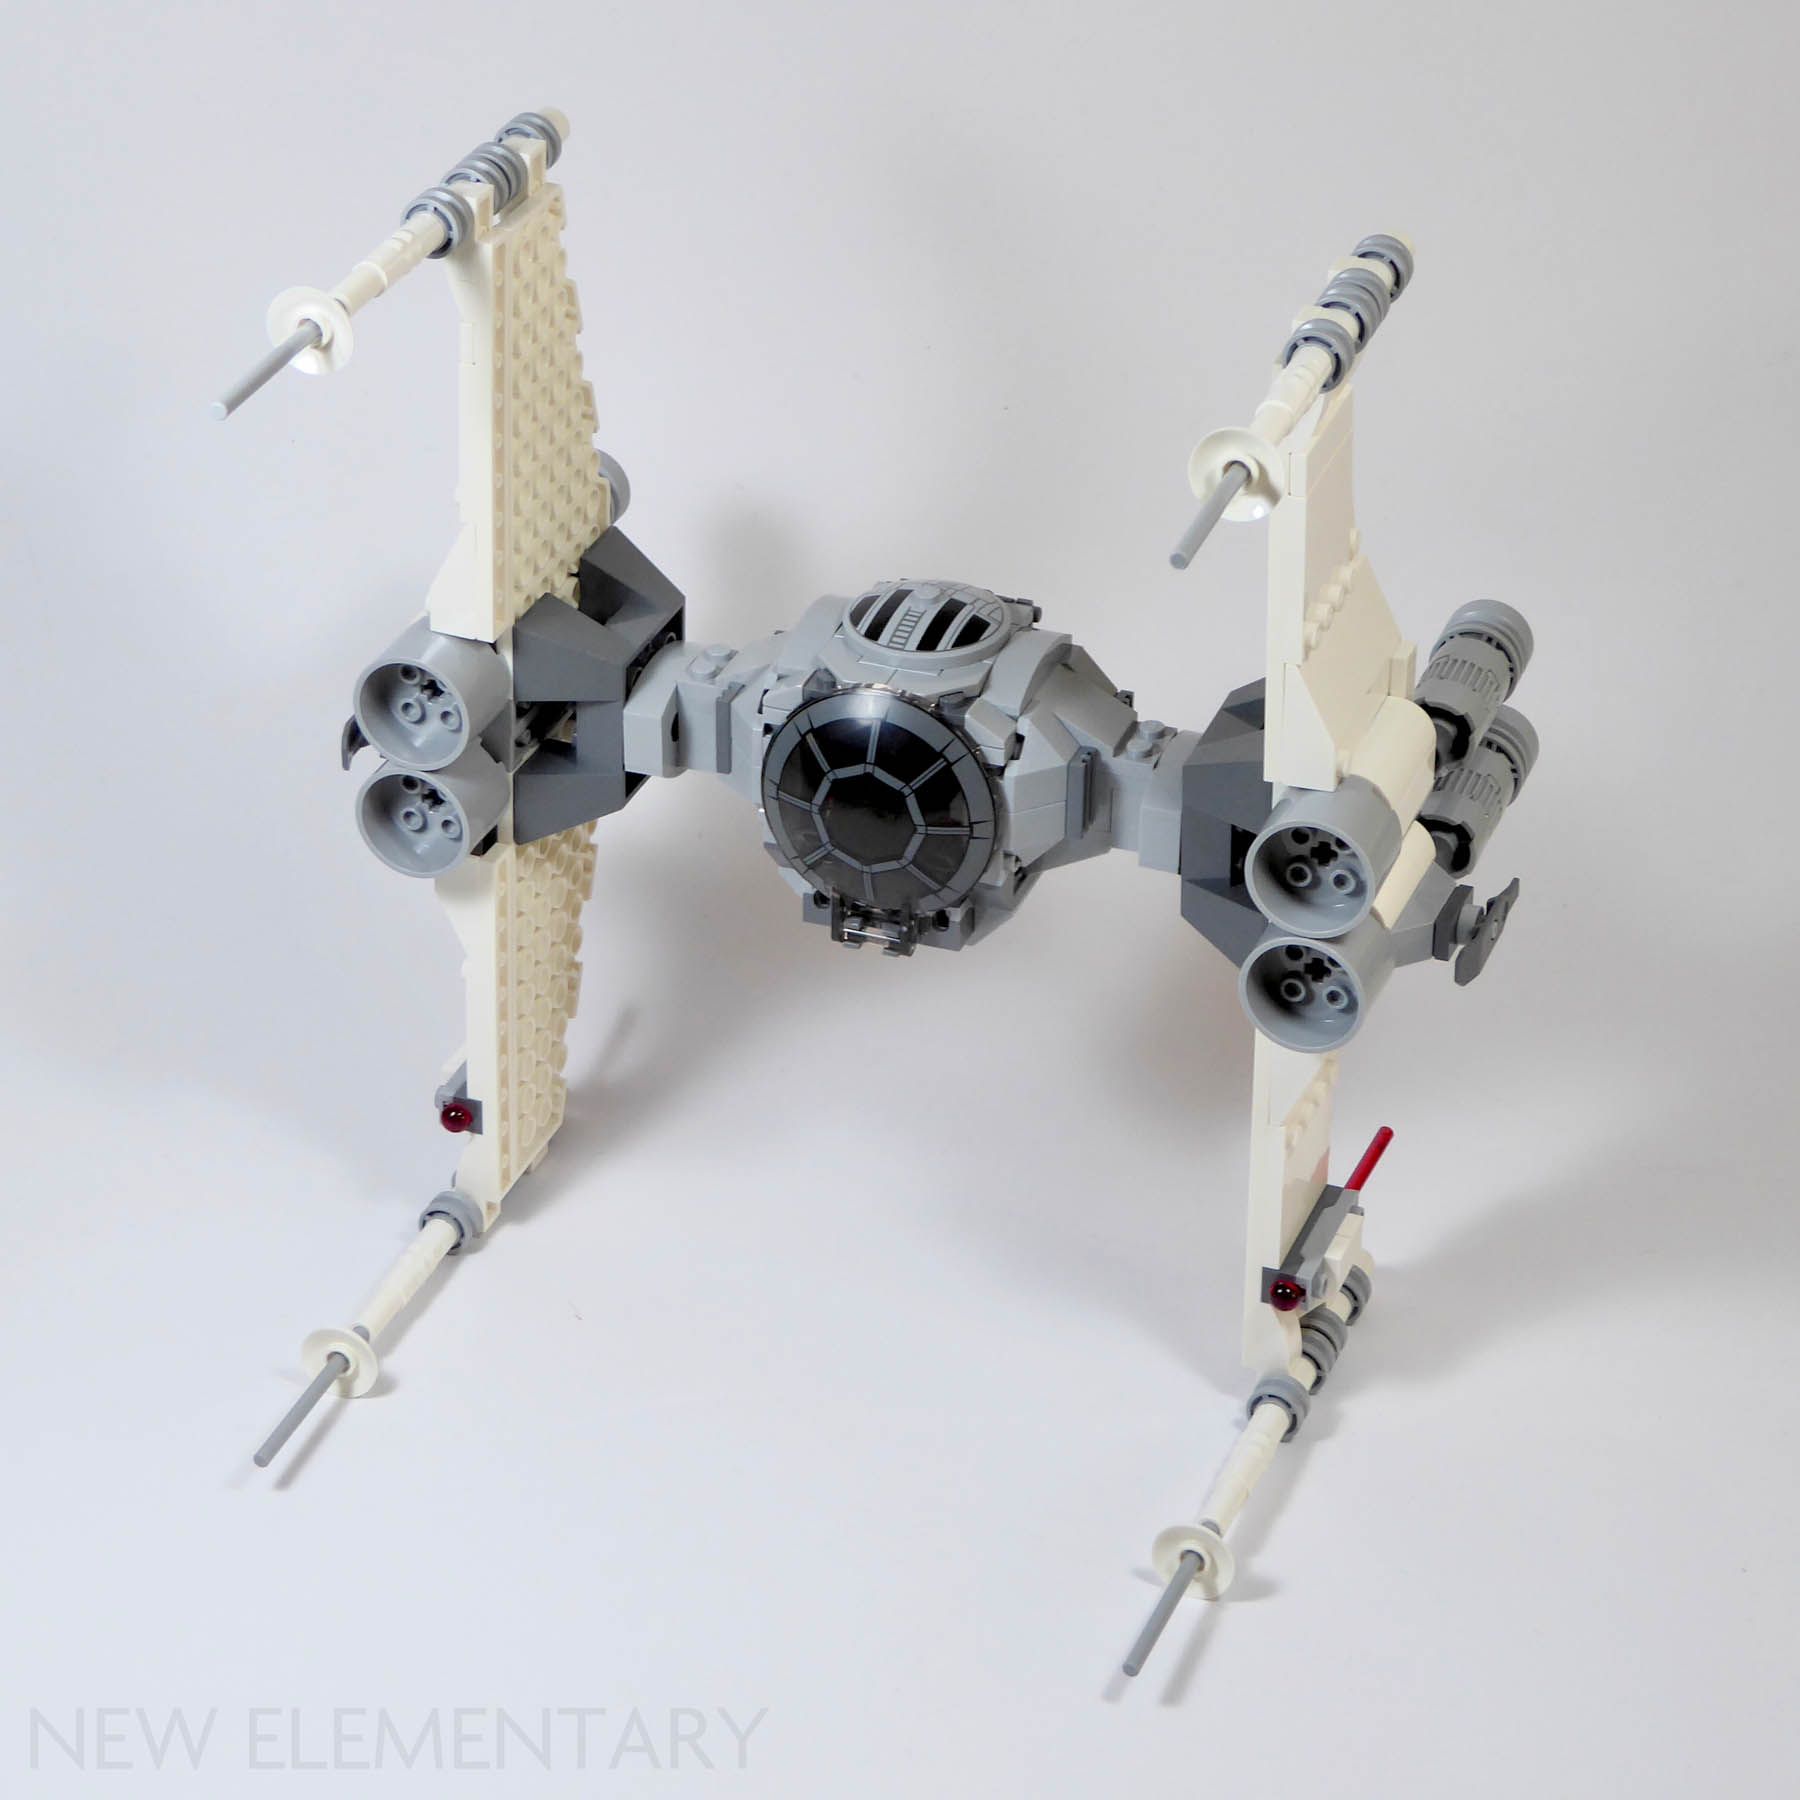 LEGO Star Wars 75301 Luke Skywalker's X-Wing Fighter & 75300